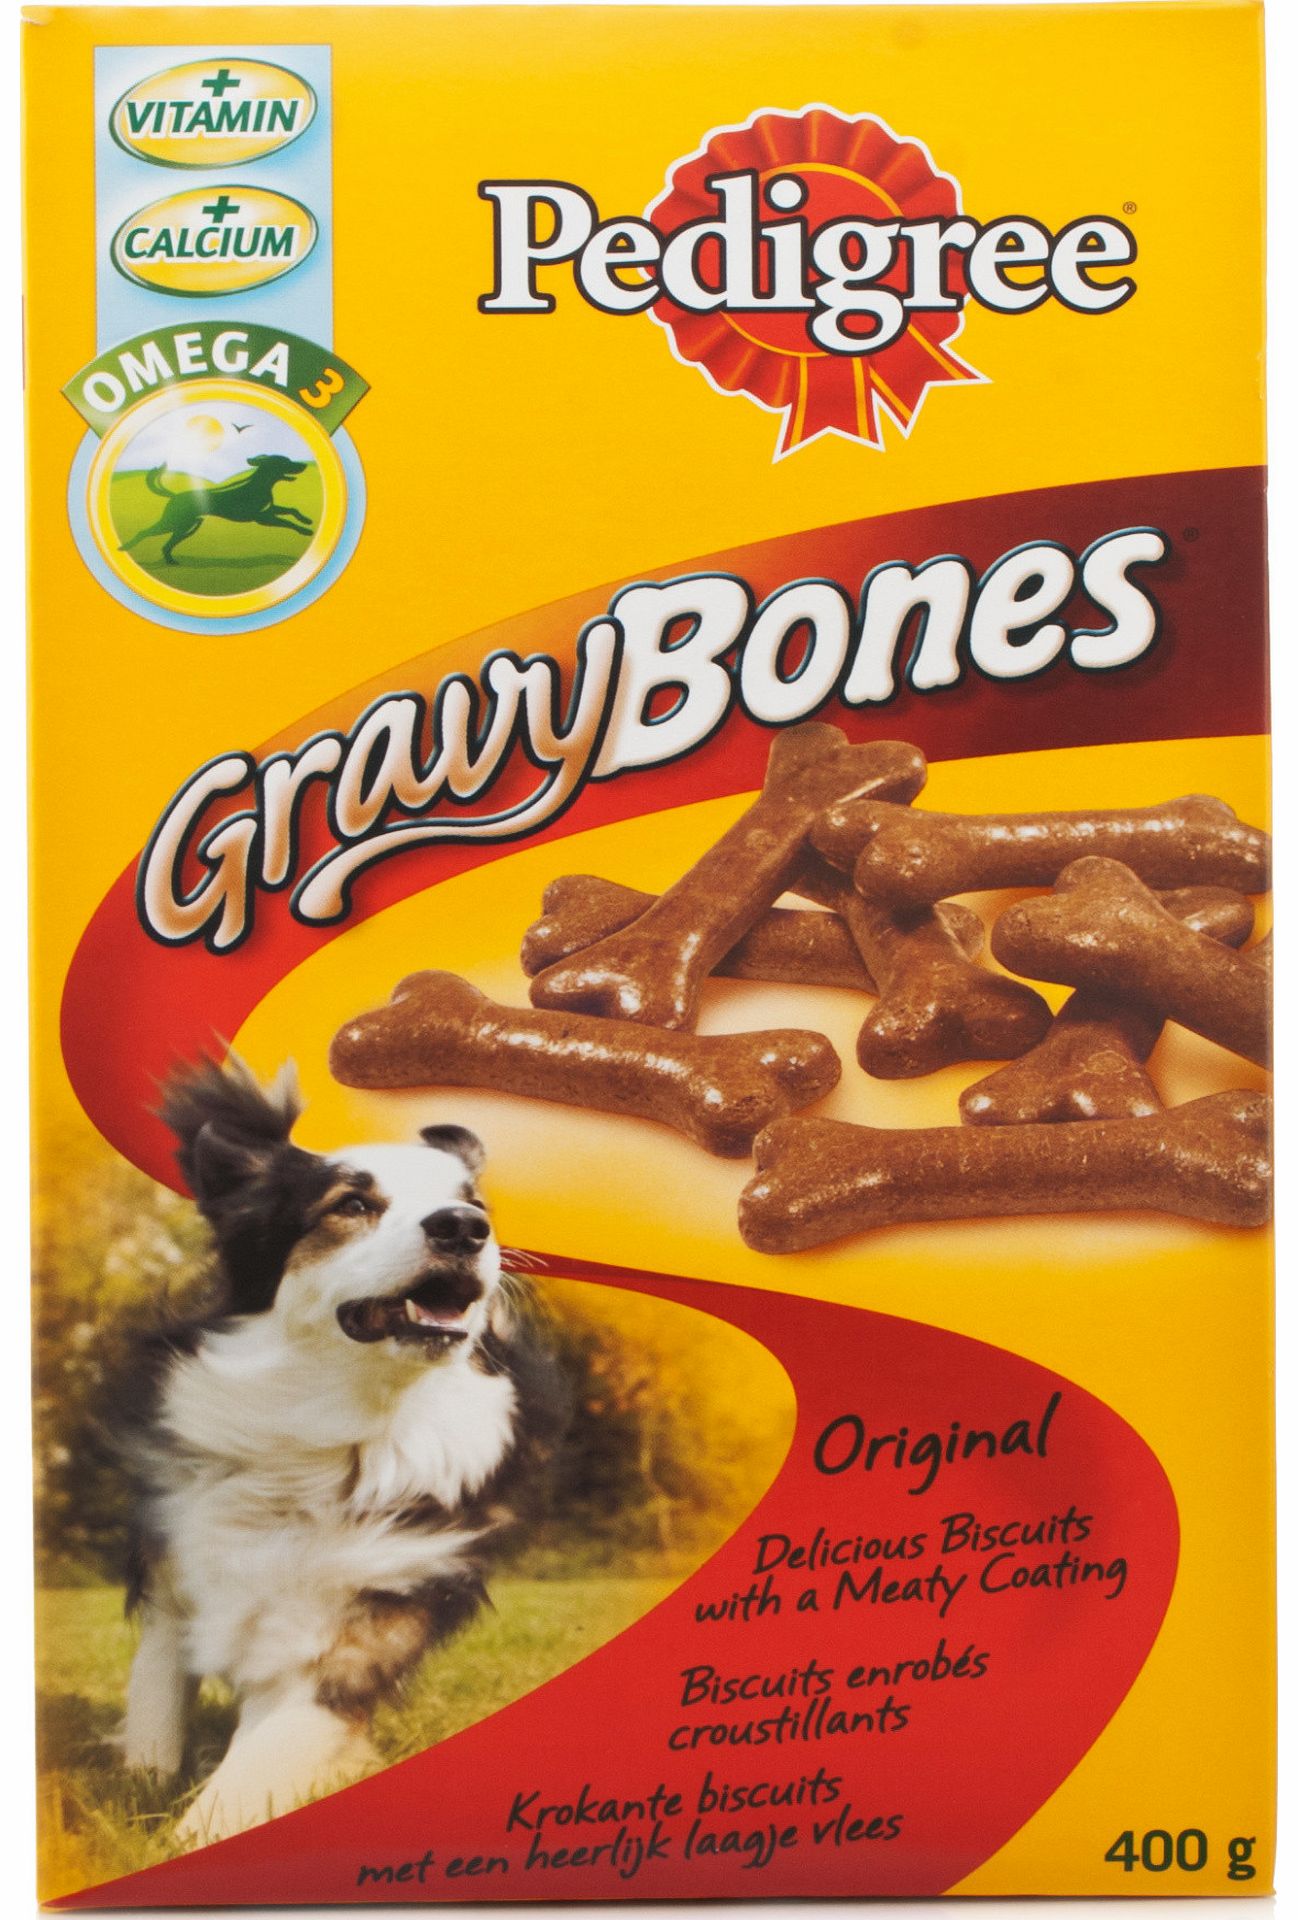 Gravy Bones